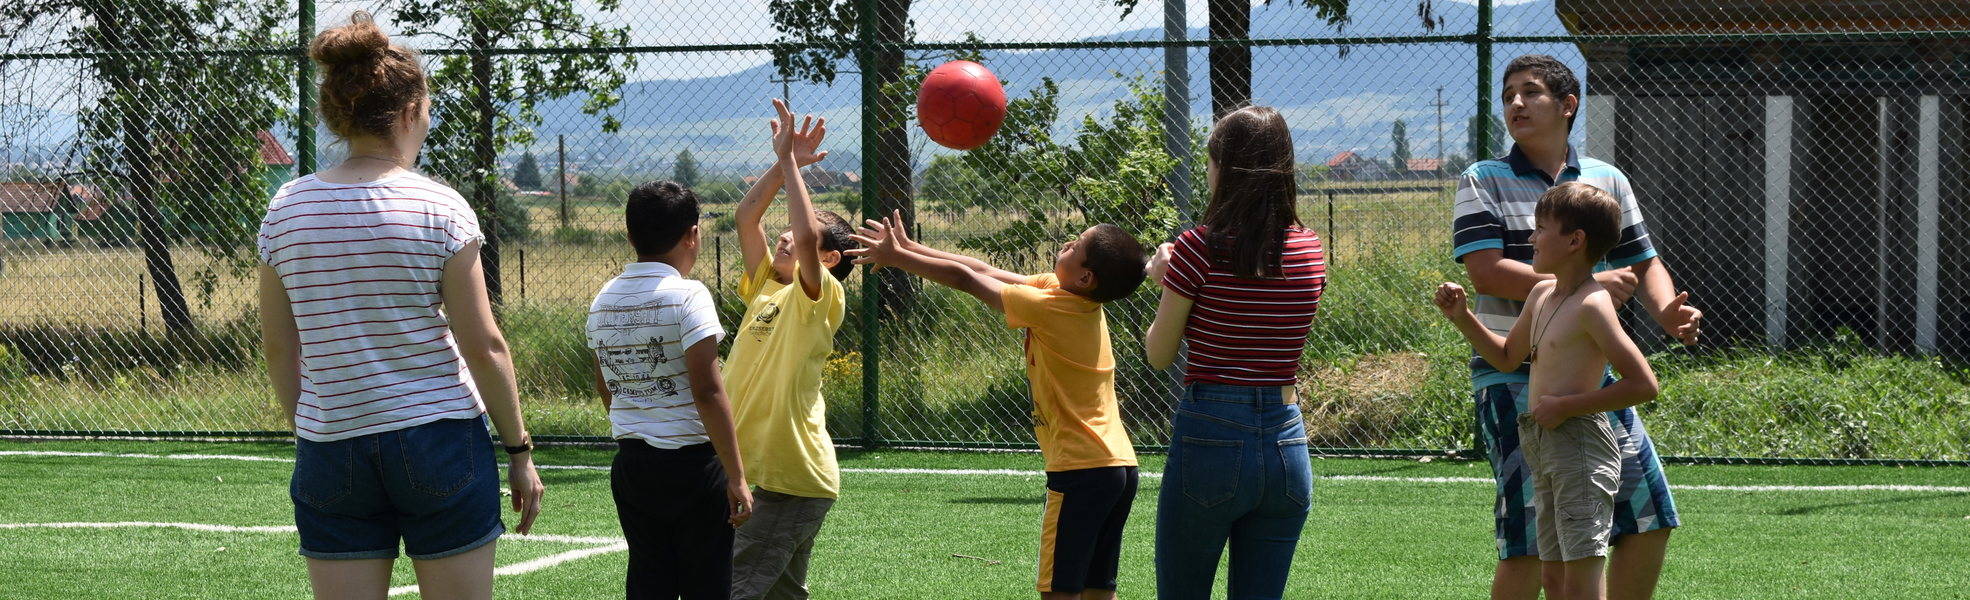 Children play in volunteer project in Romania